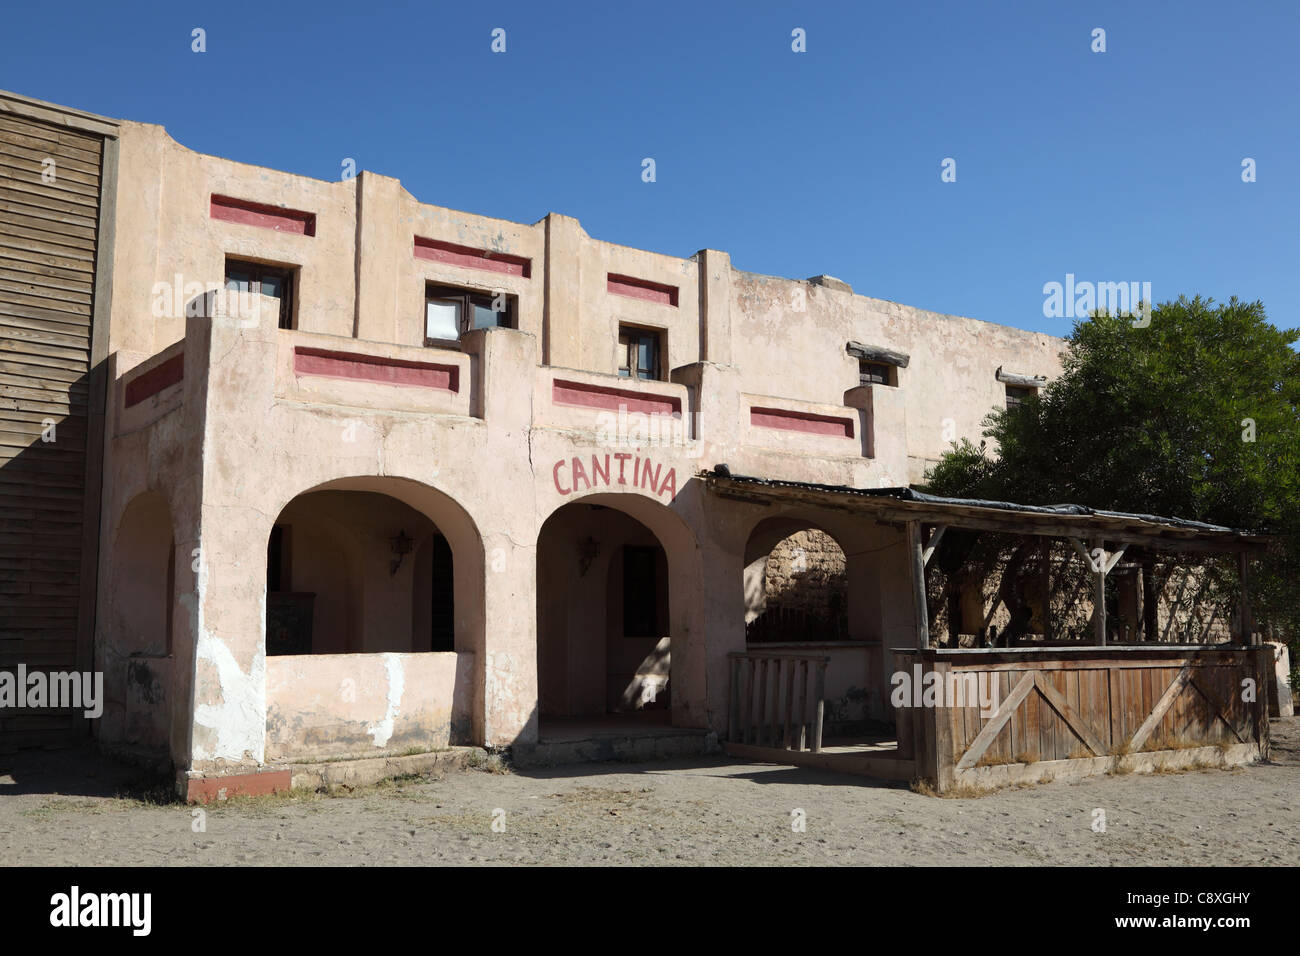 Cantina dans un village mexicain abandonnés Banque D'Images